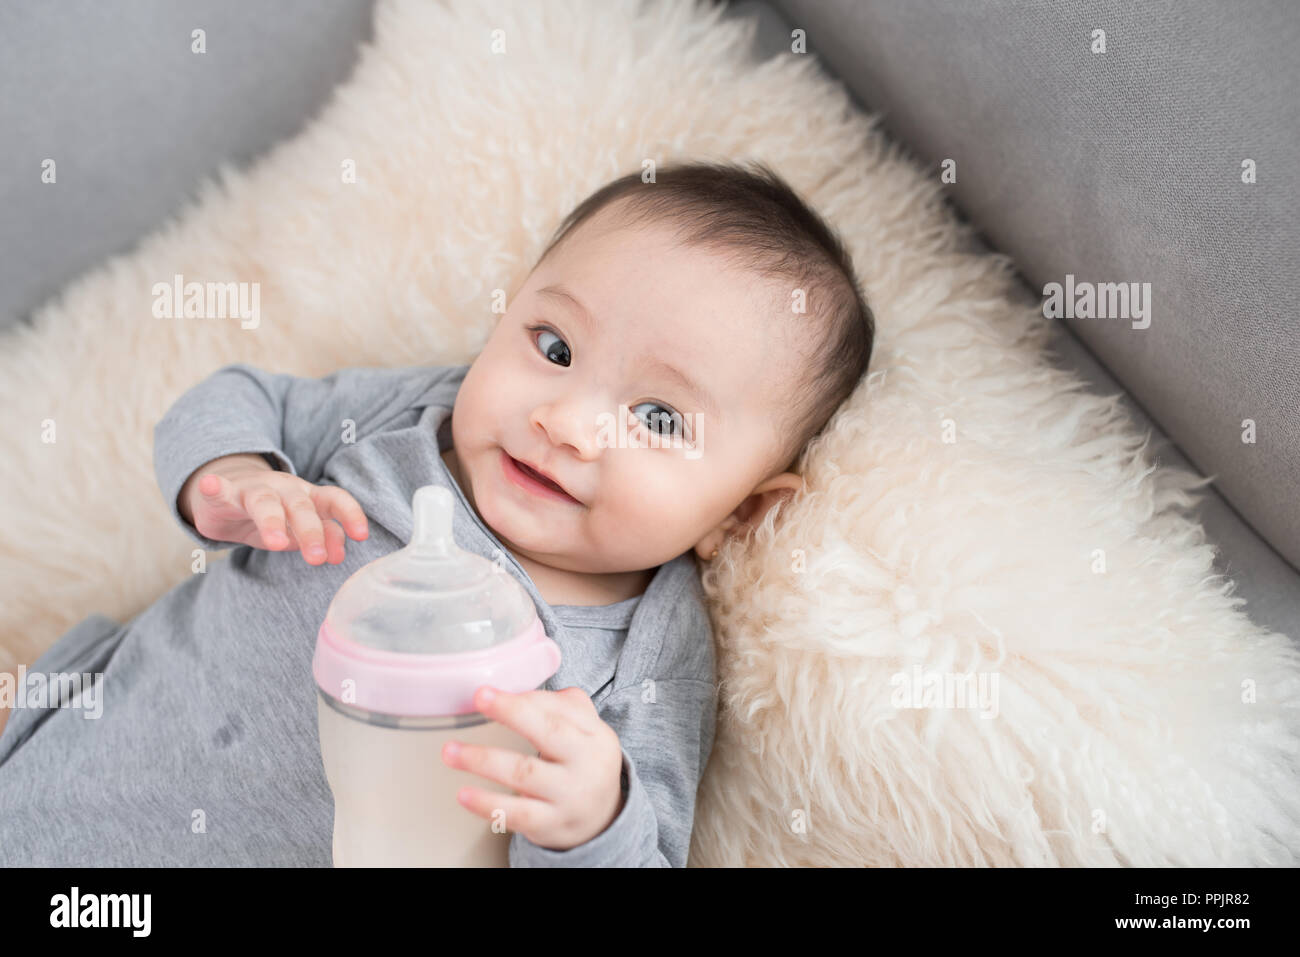 L'alimentation du nourrisson bébé asiatique de lait bouteille, 9 mois après la naissance Banque D'Images